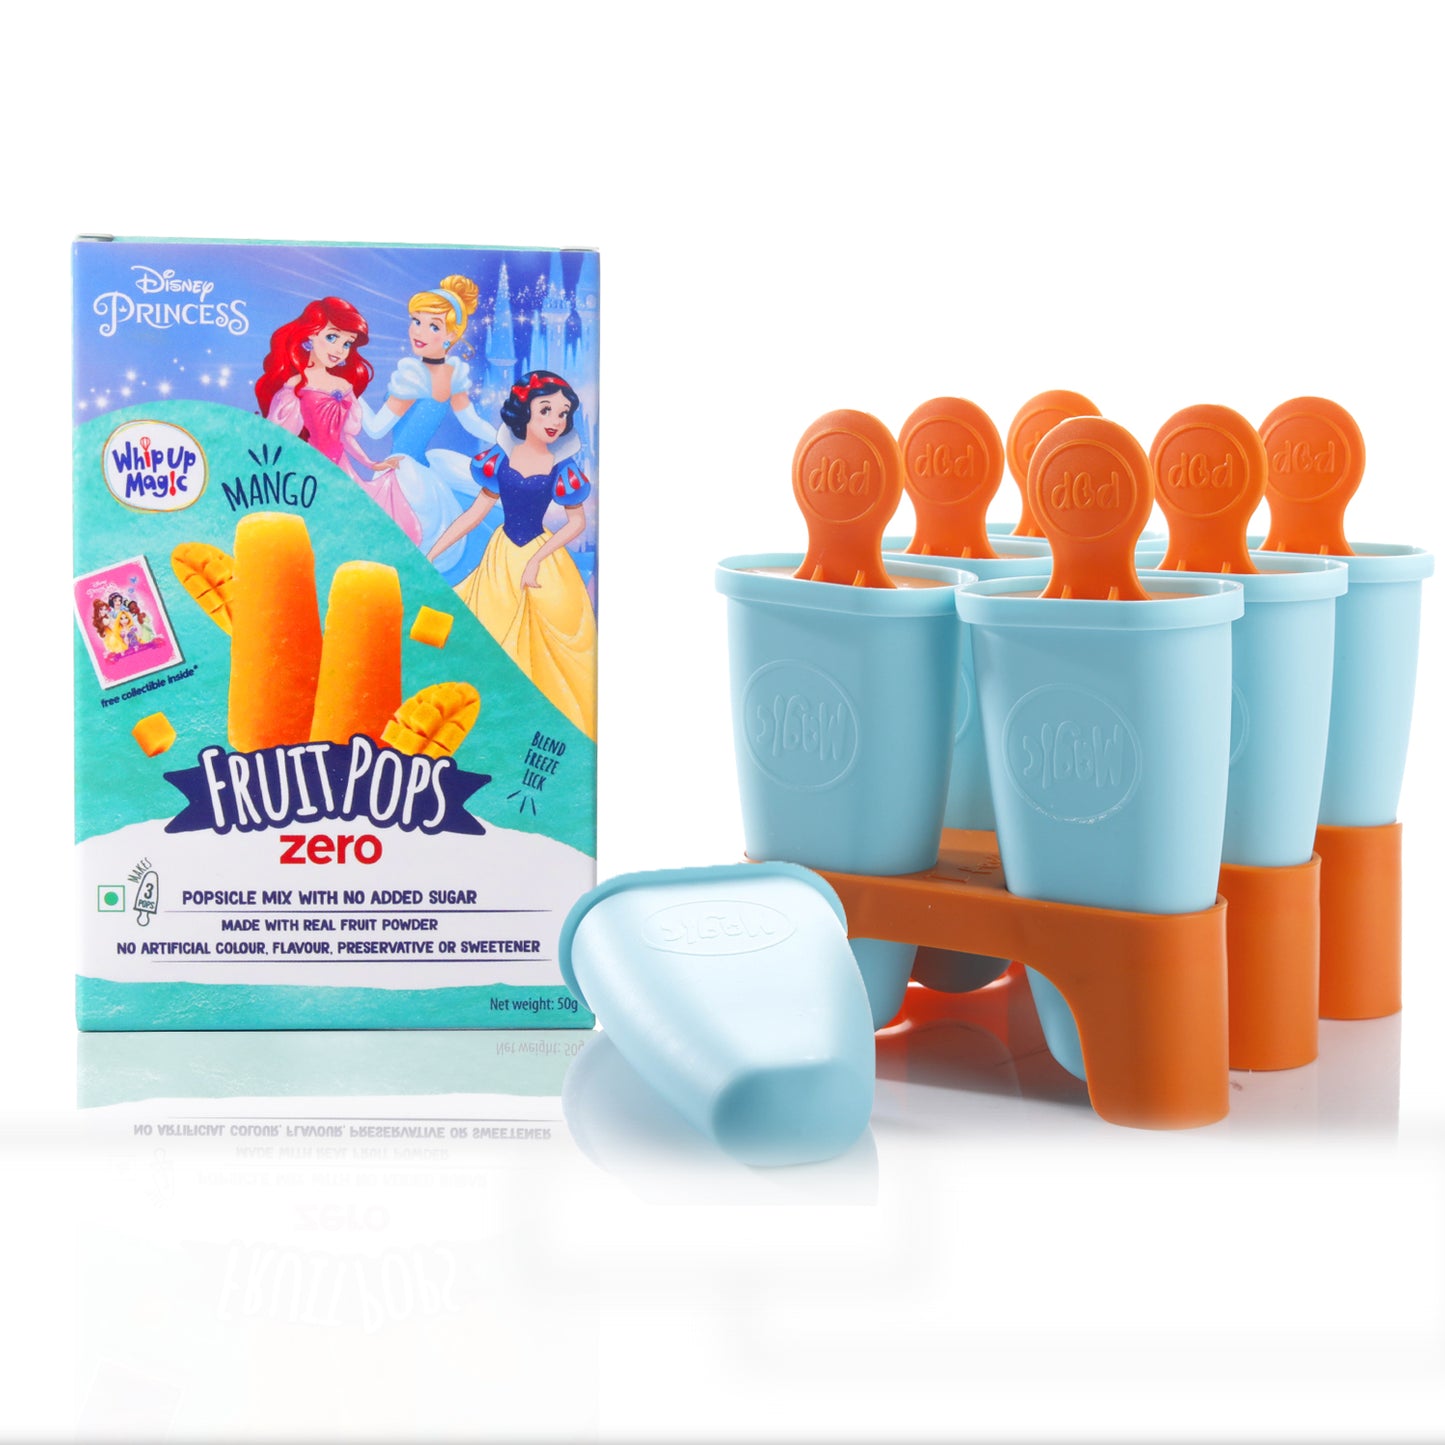 Starter Pop Kit (No added sugar) - Makes 3 Pops WhipUpMagic